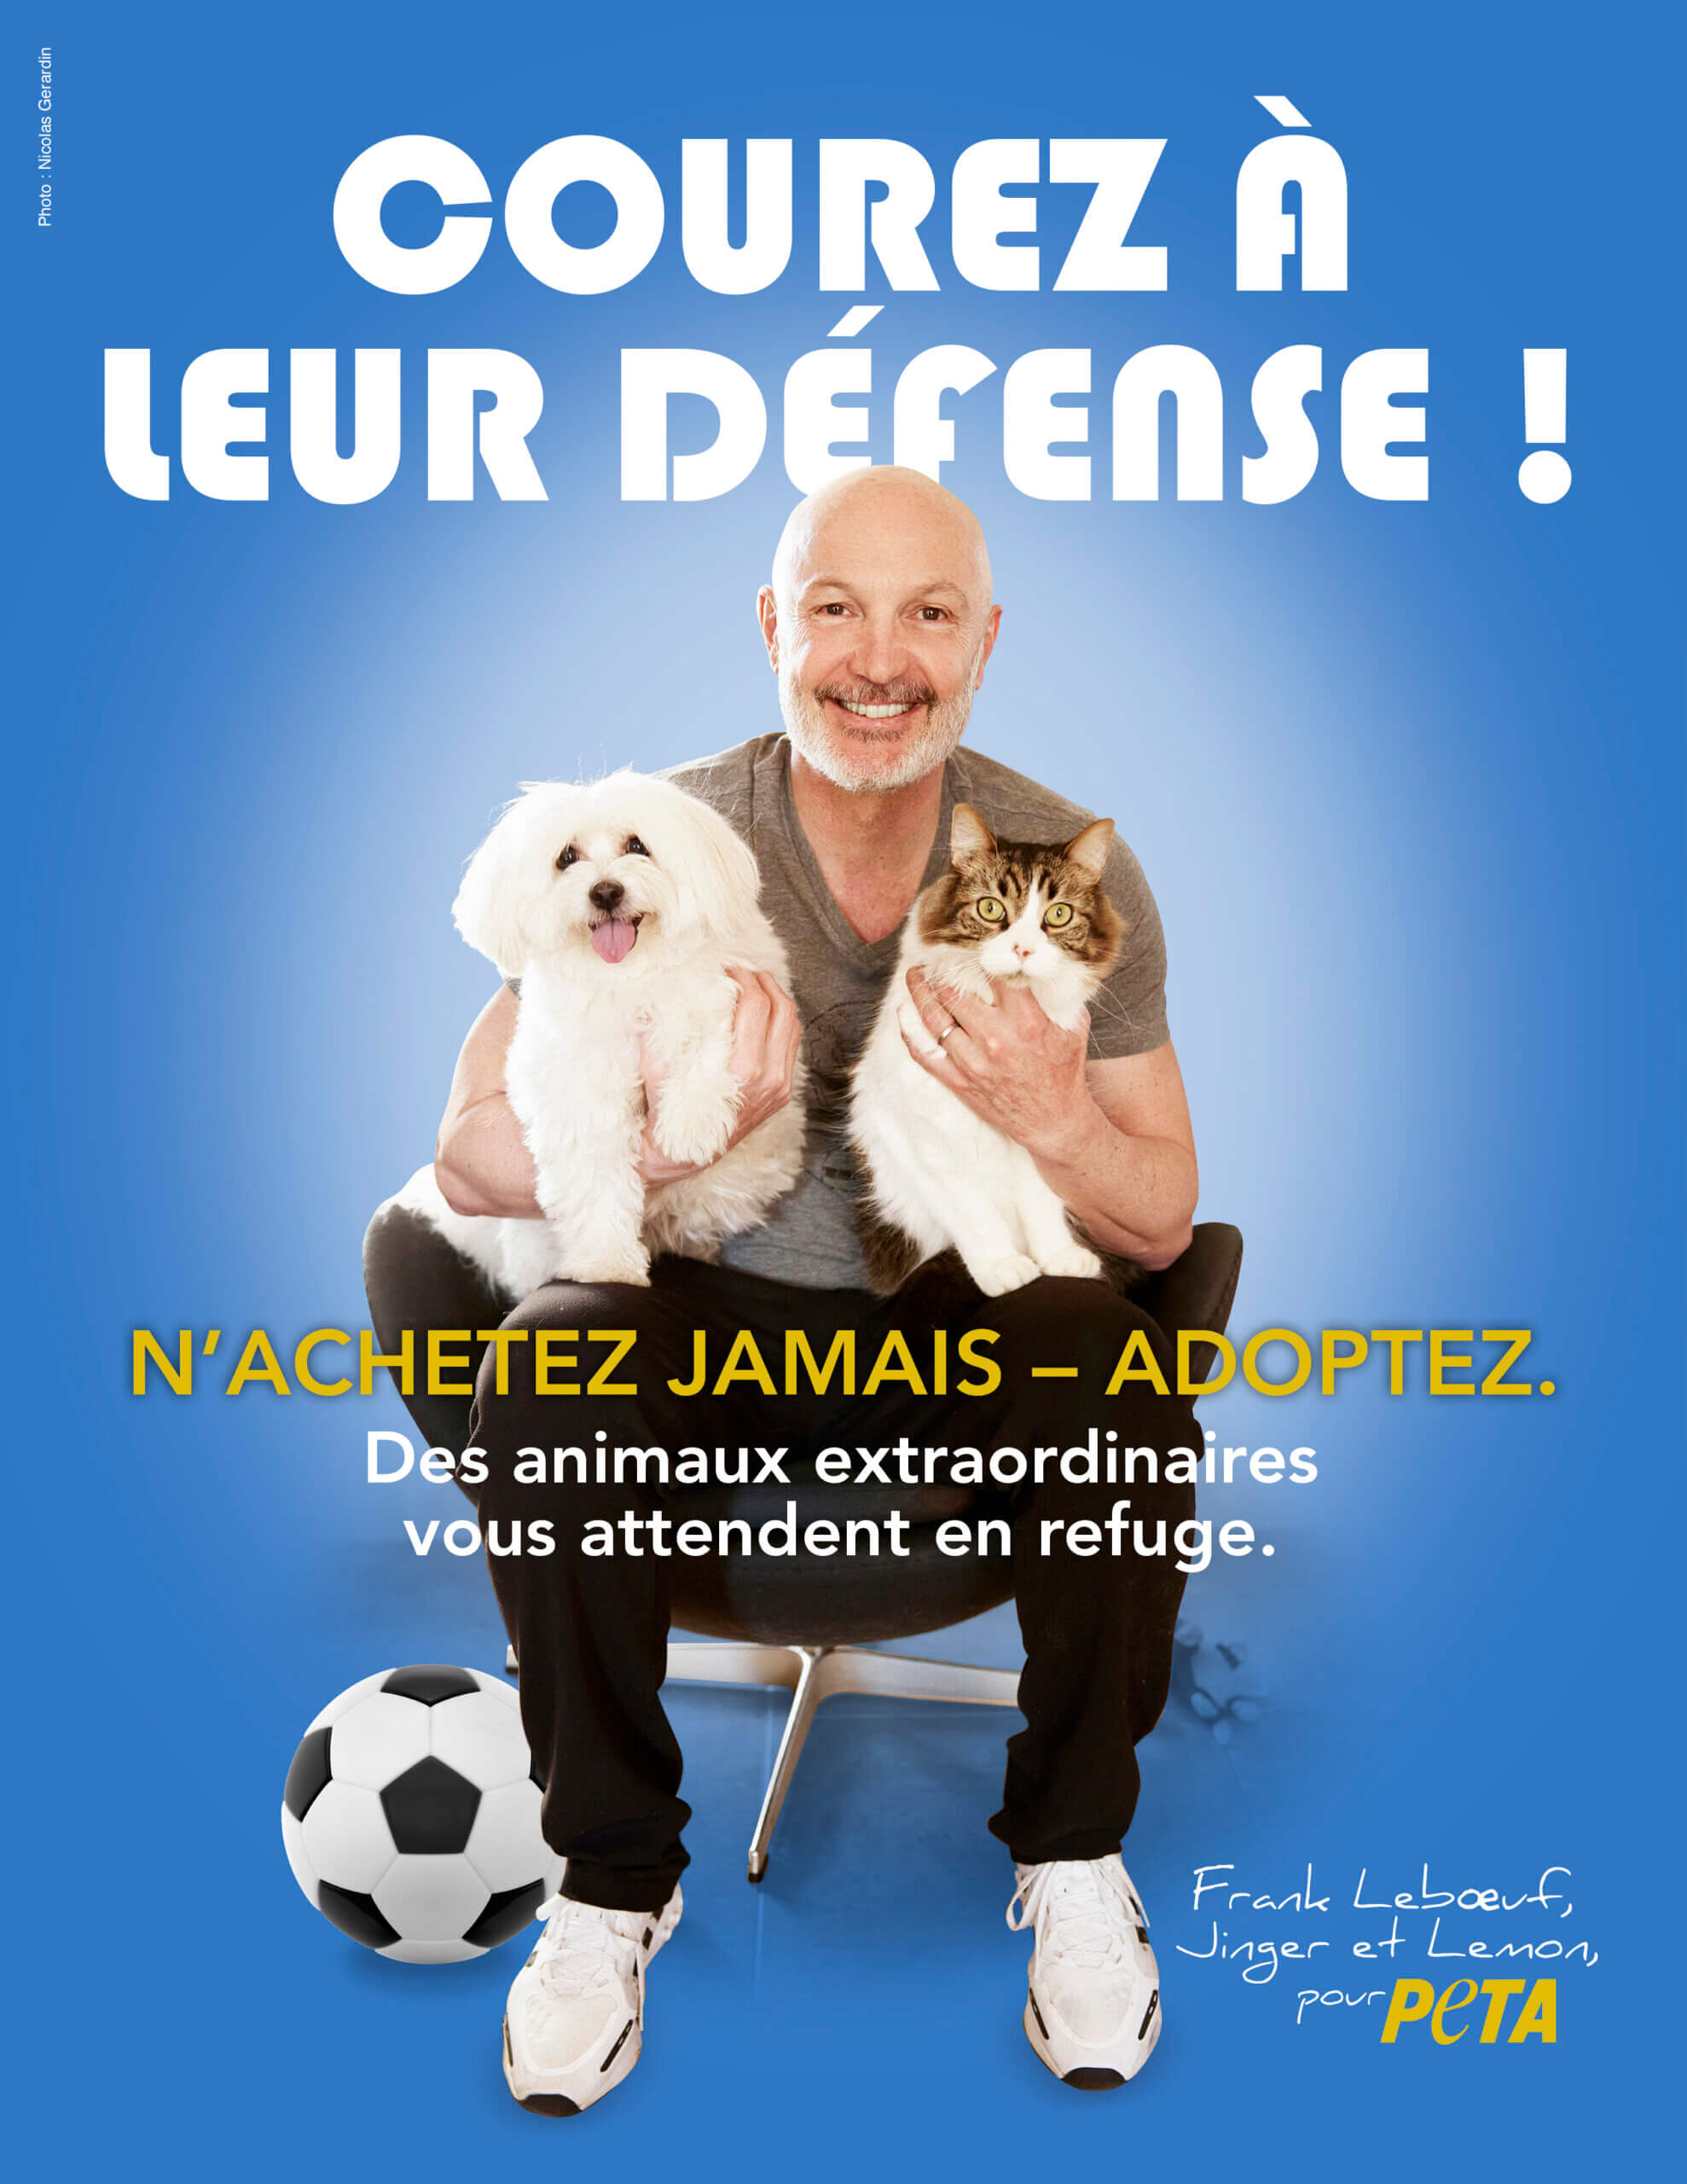 « N’achetez jamais – adoptez ! » – Frank Lebœuf prend la défense des animaux